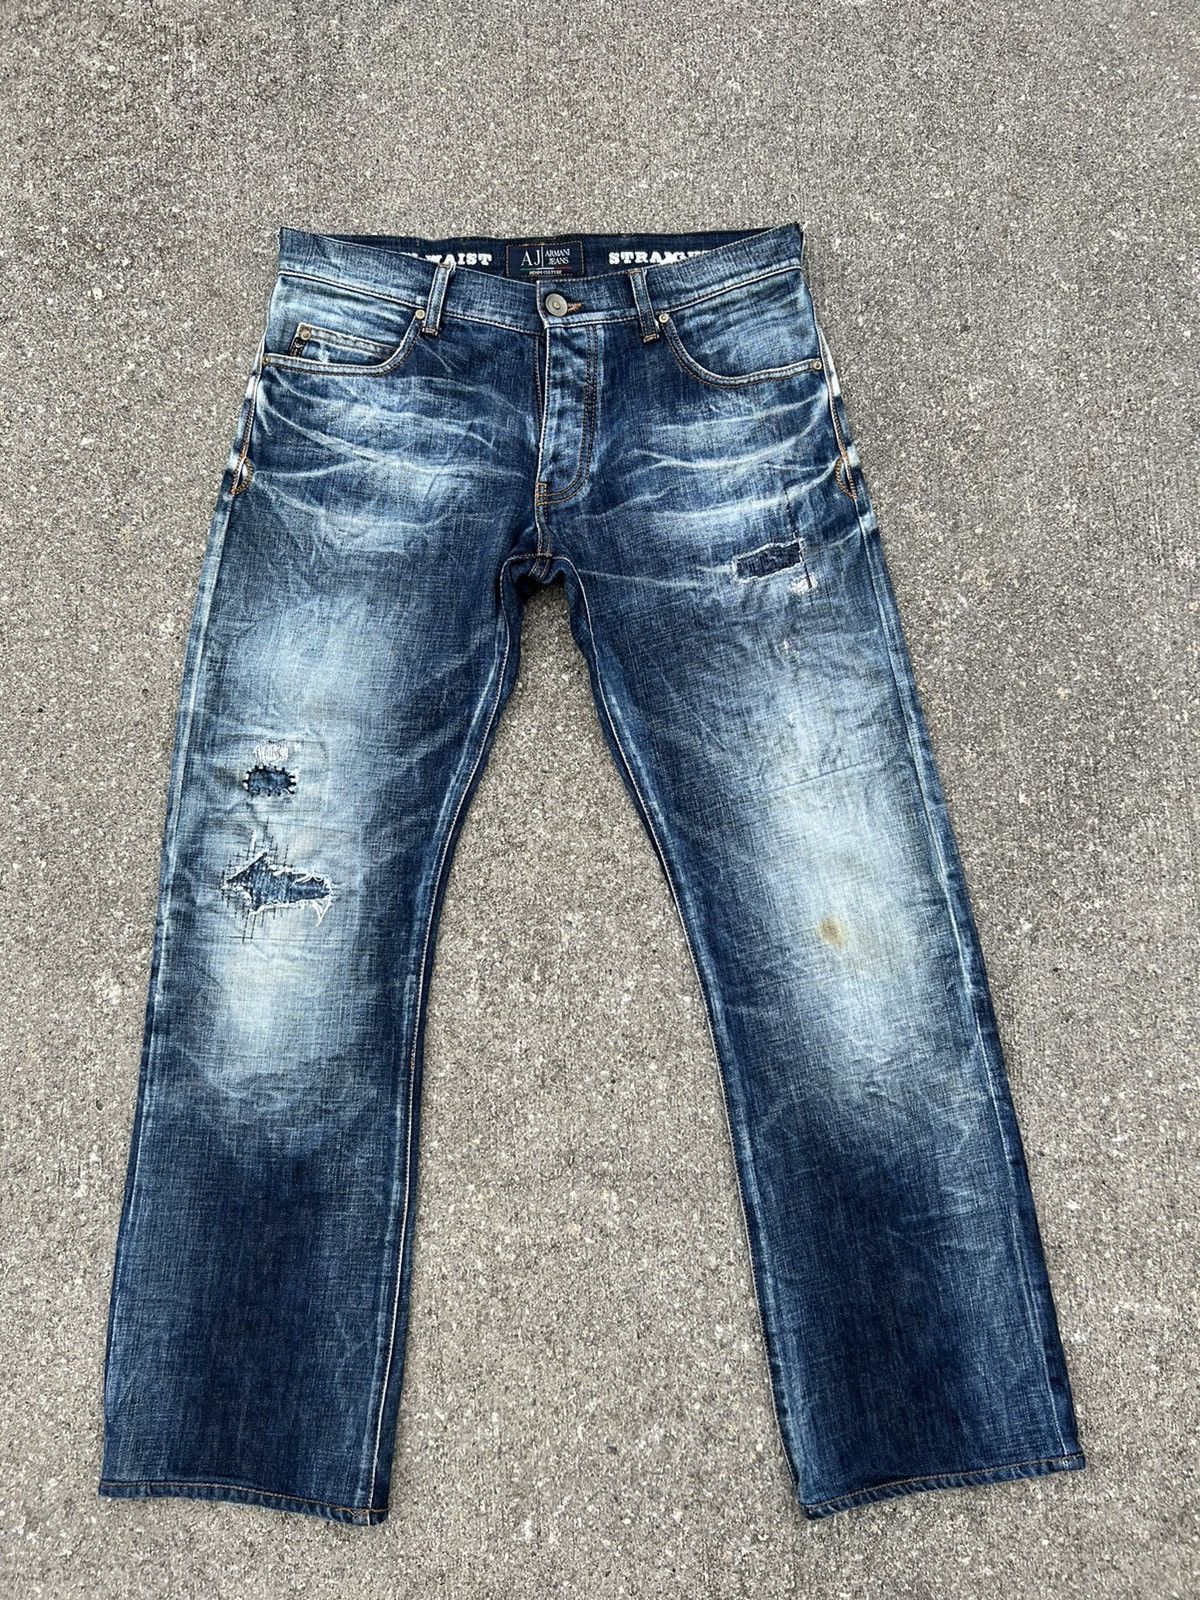 Påstand Vis stedet Lingvistik Vintage Vintage Armani Jeans Limited Edition Denim Culture Jeans | Grailed